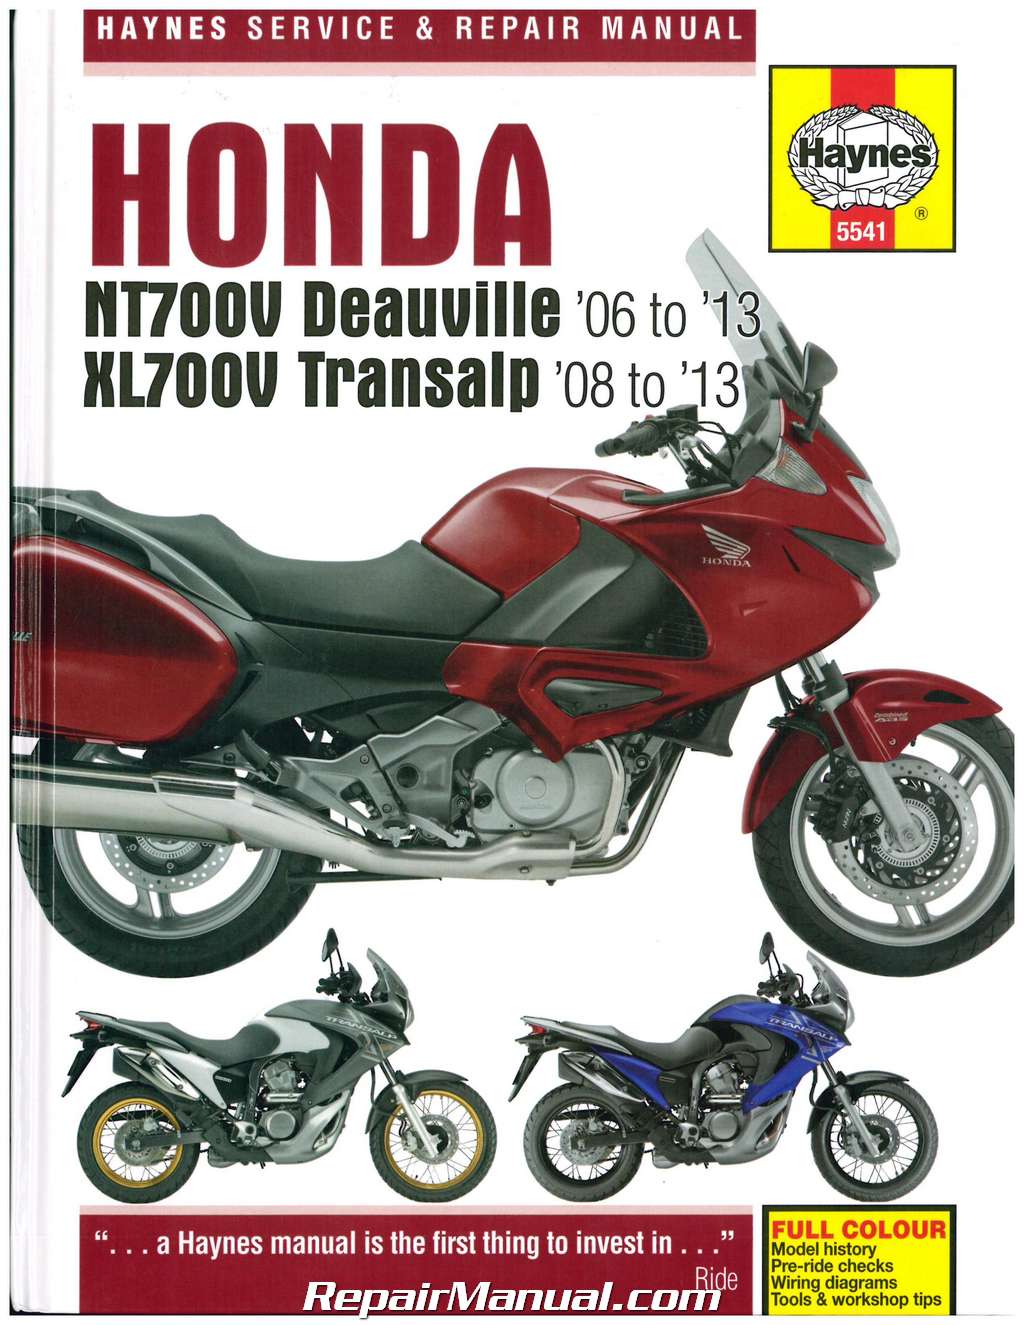 Honda Bike Manual